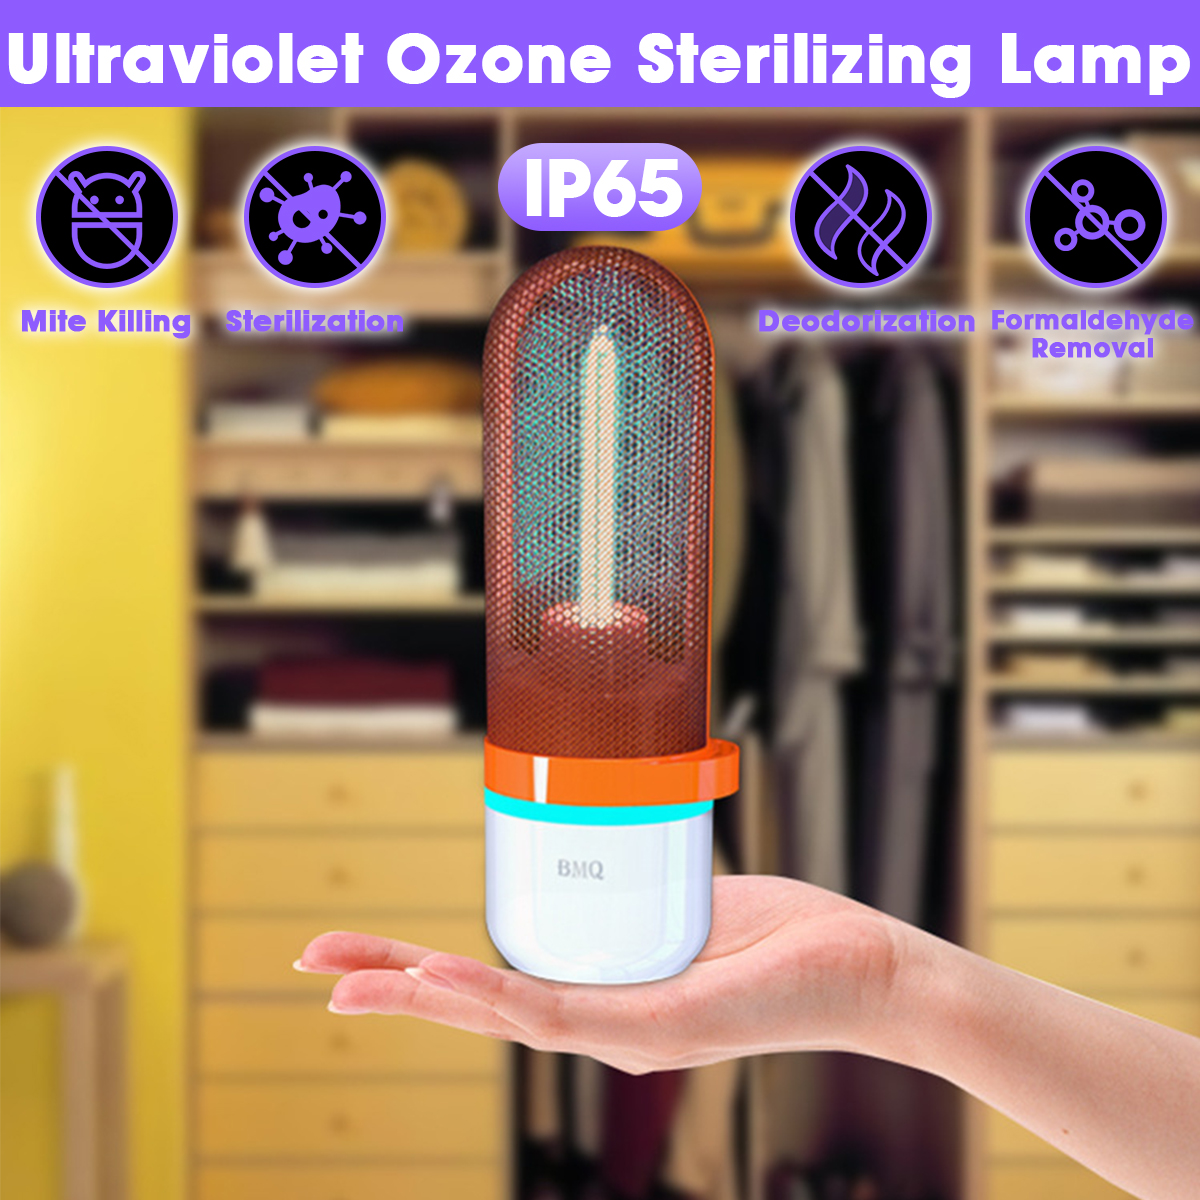 Ultraviolet-Ozone-Sterilization-UV-Lamp-Portable-Disinfection-Lighting-Mite-Kill-DC5V-UV-Sterilizer--1652877-1